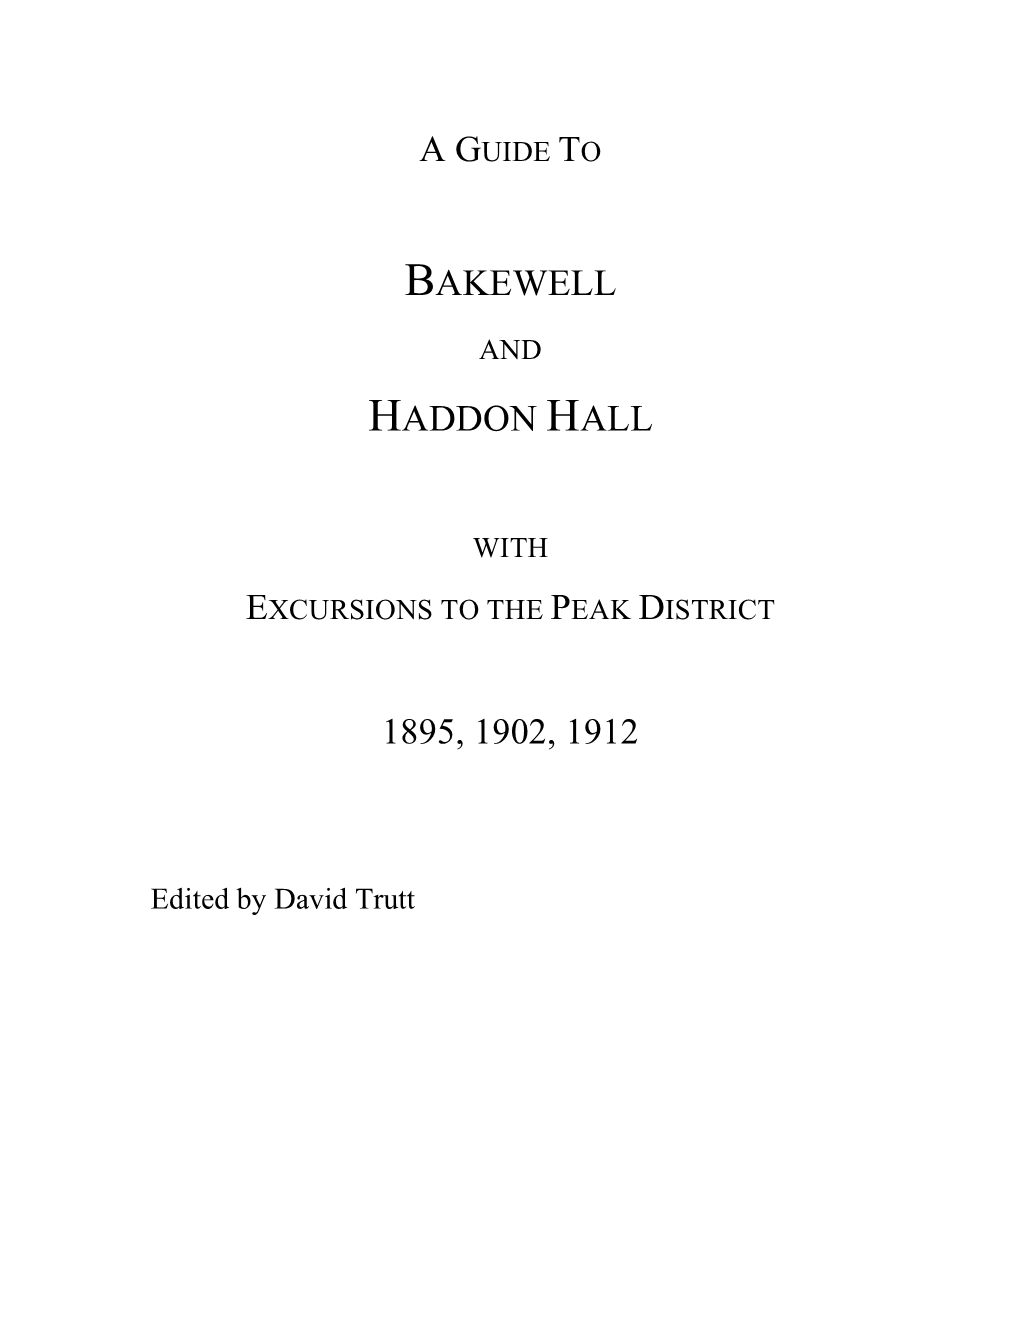 Bakewell Haddon Hall